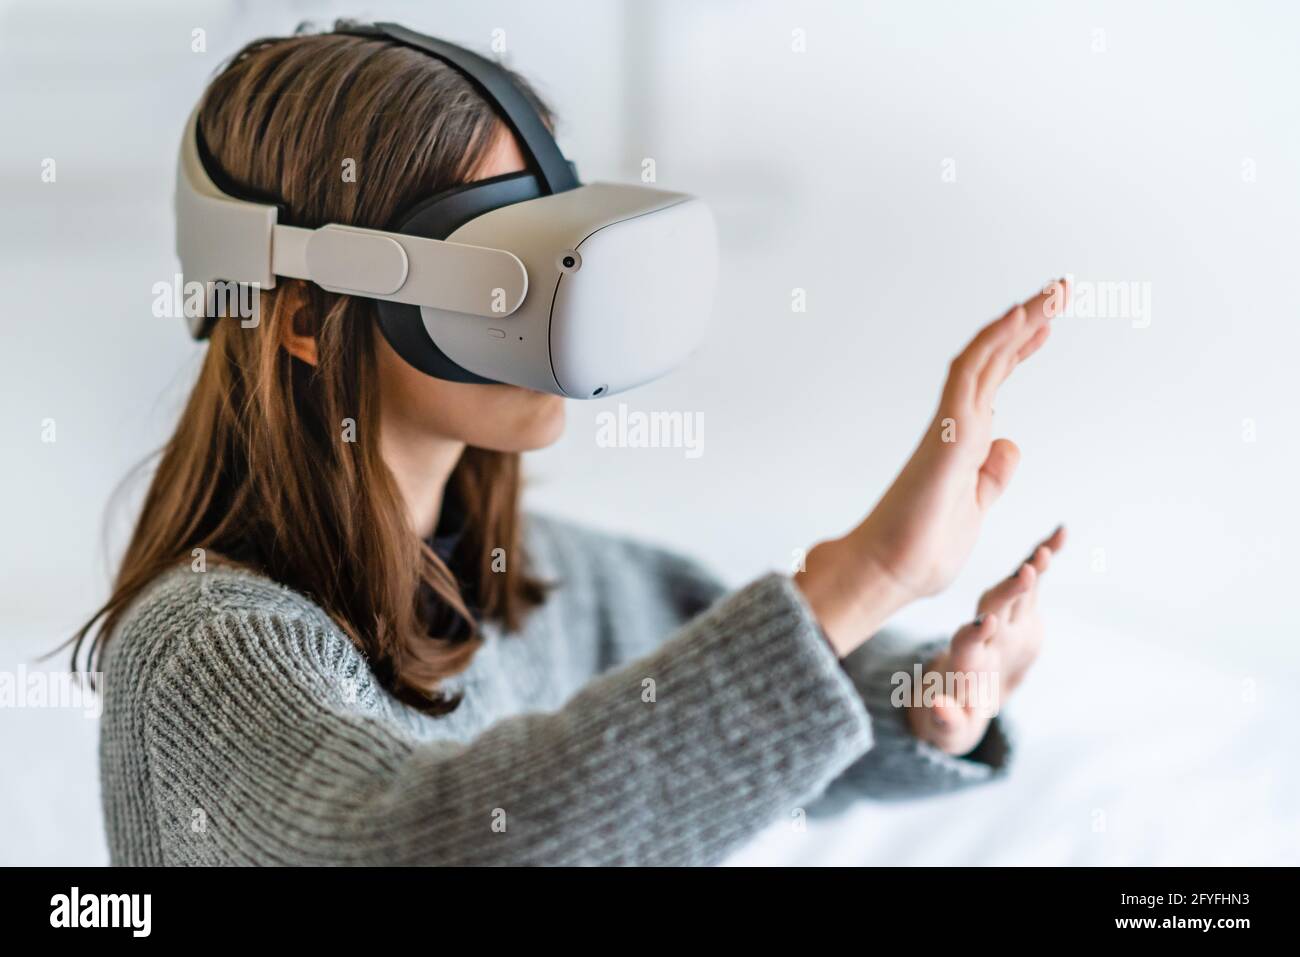 Ragazza adolescente che utilizza la cuffia per Oculus di realtà virtuale. Foto Stock